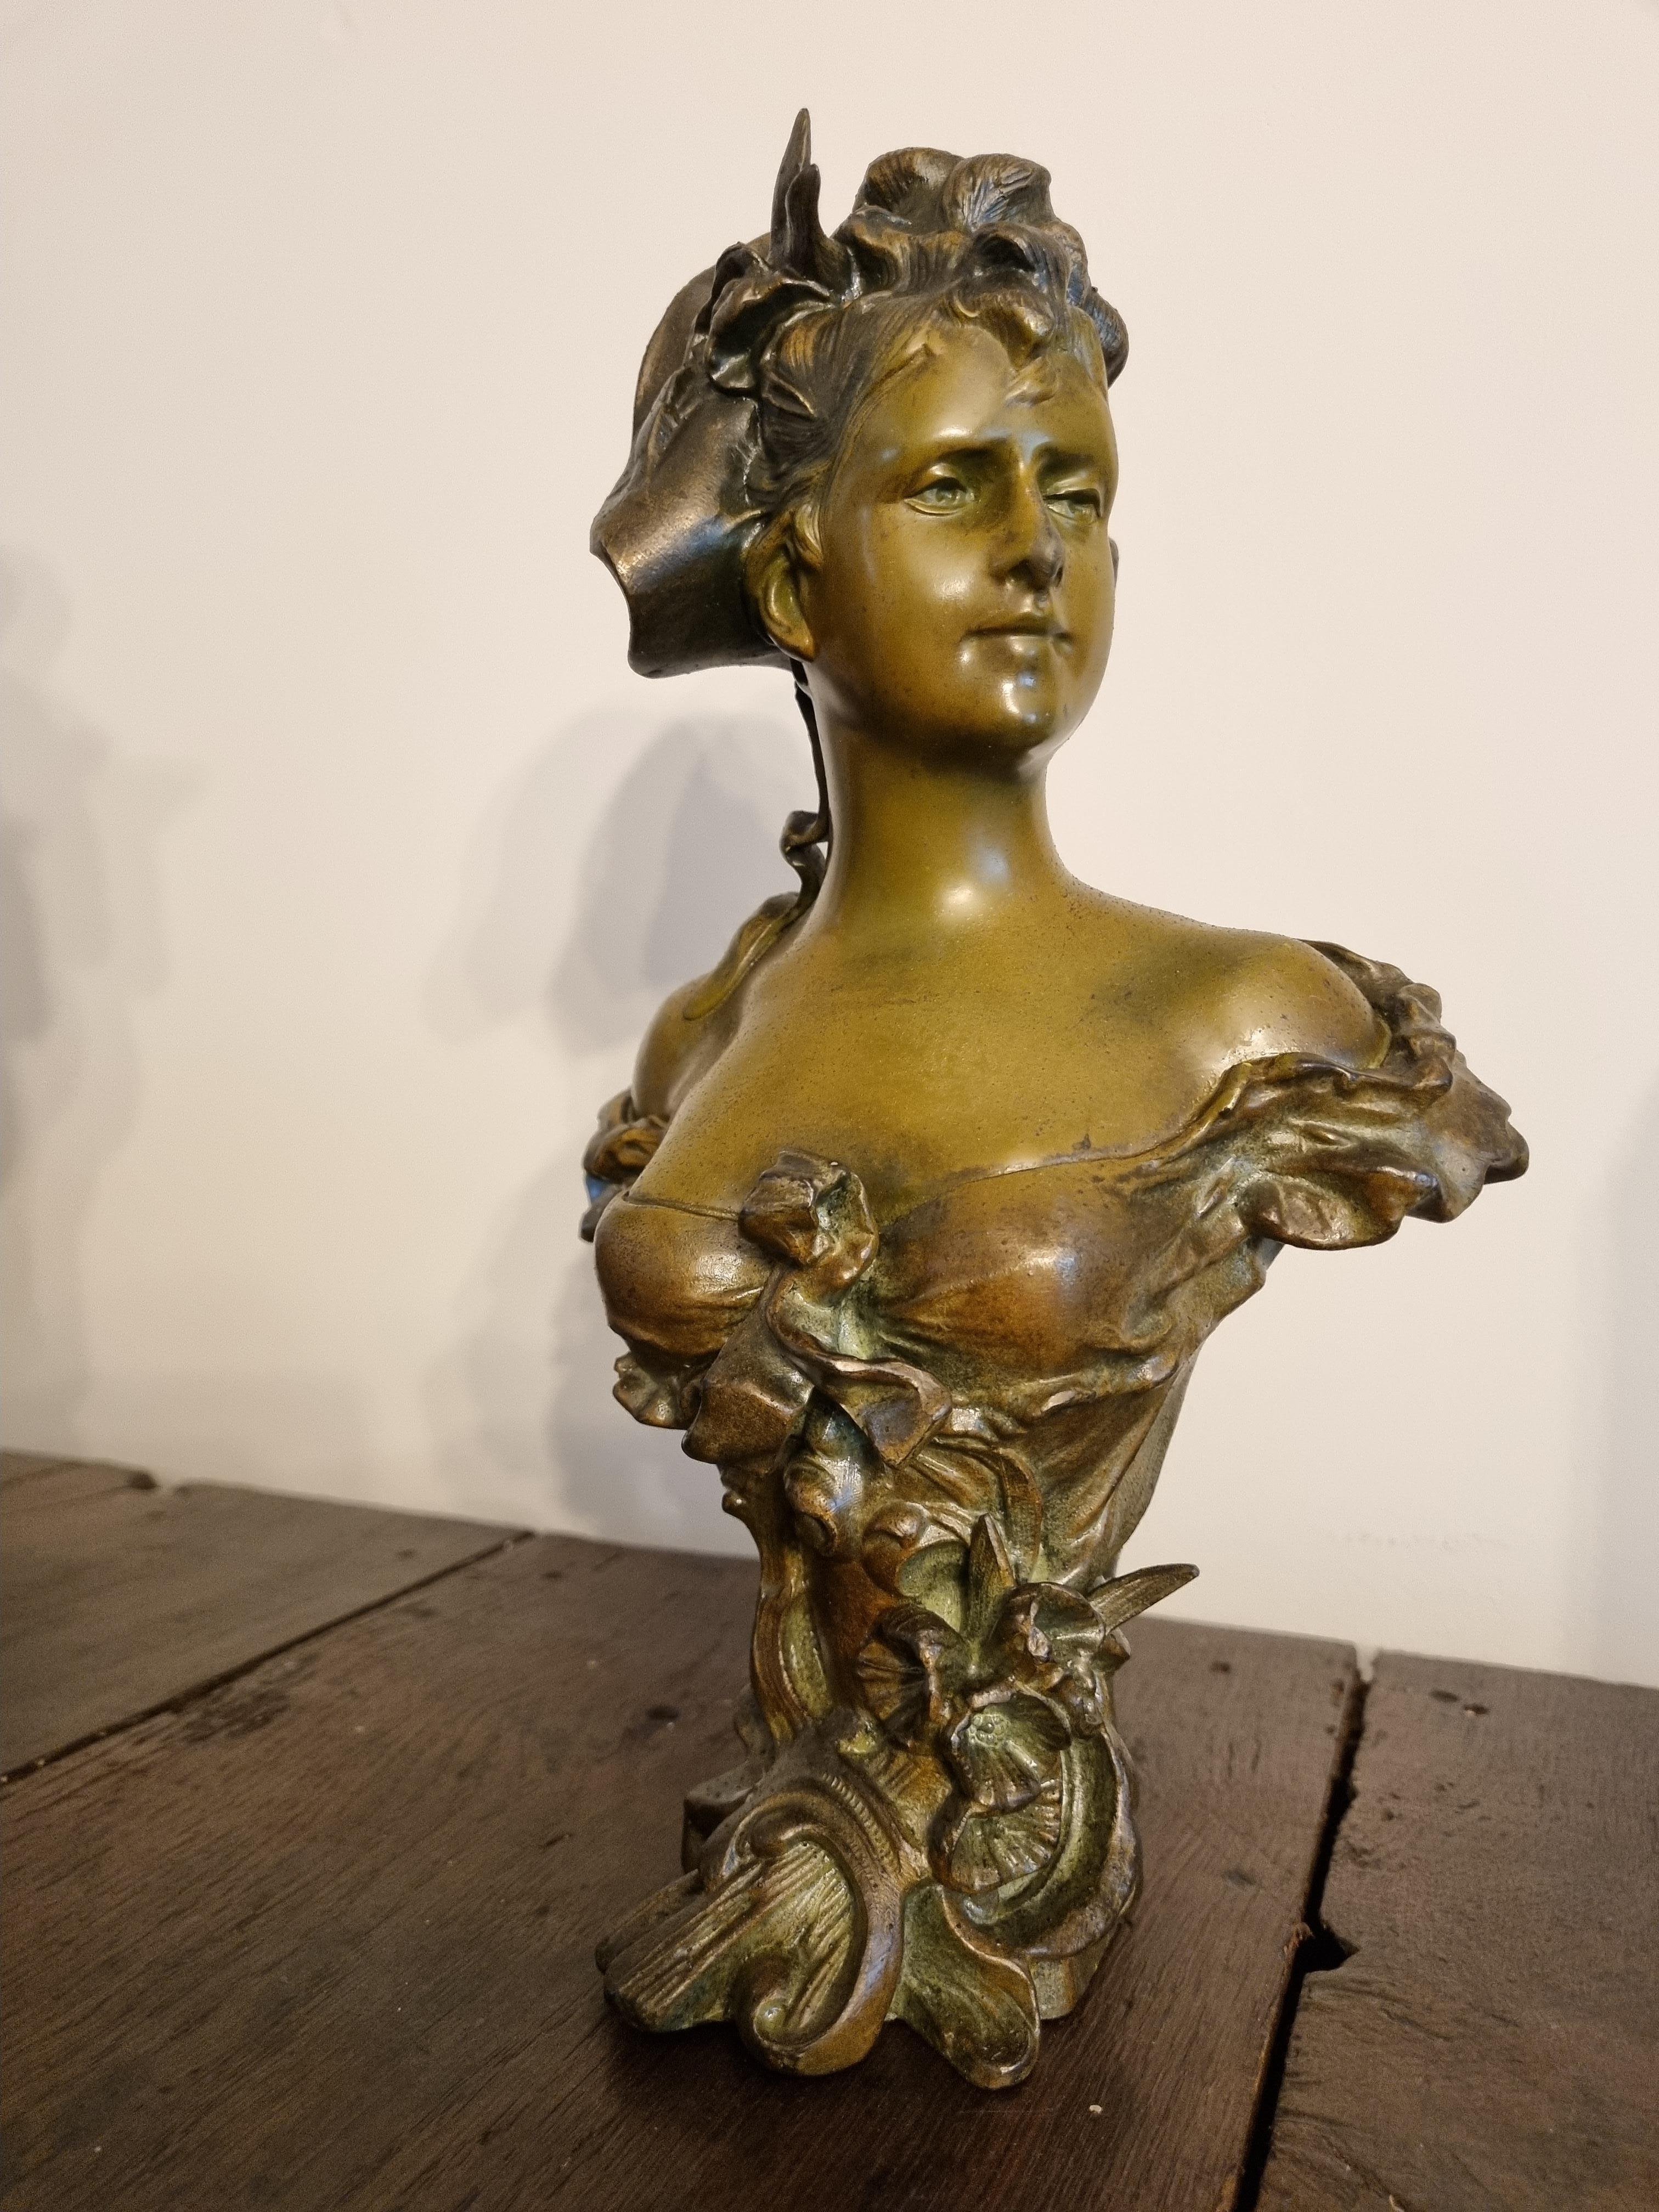 Buste en bronze Art Nouveau , circa 1900 

Alfred Jean Foretay, 1861-1944, 

Un artiste renommé de la fin du 19e et du début du 20e siècle . 

Buste en bronze blanc peint à froid représentant une dame de style Art nouveau.

Cette sculpture témoigne